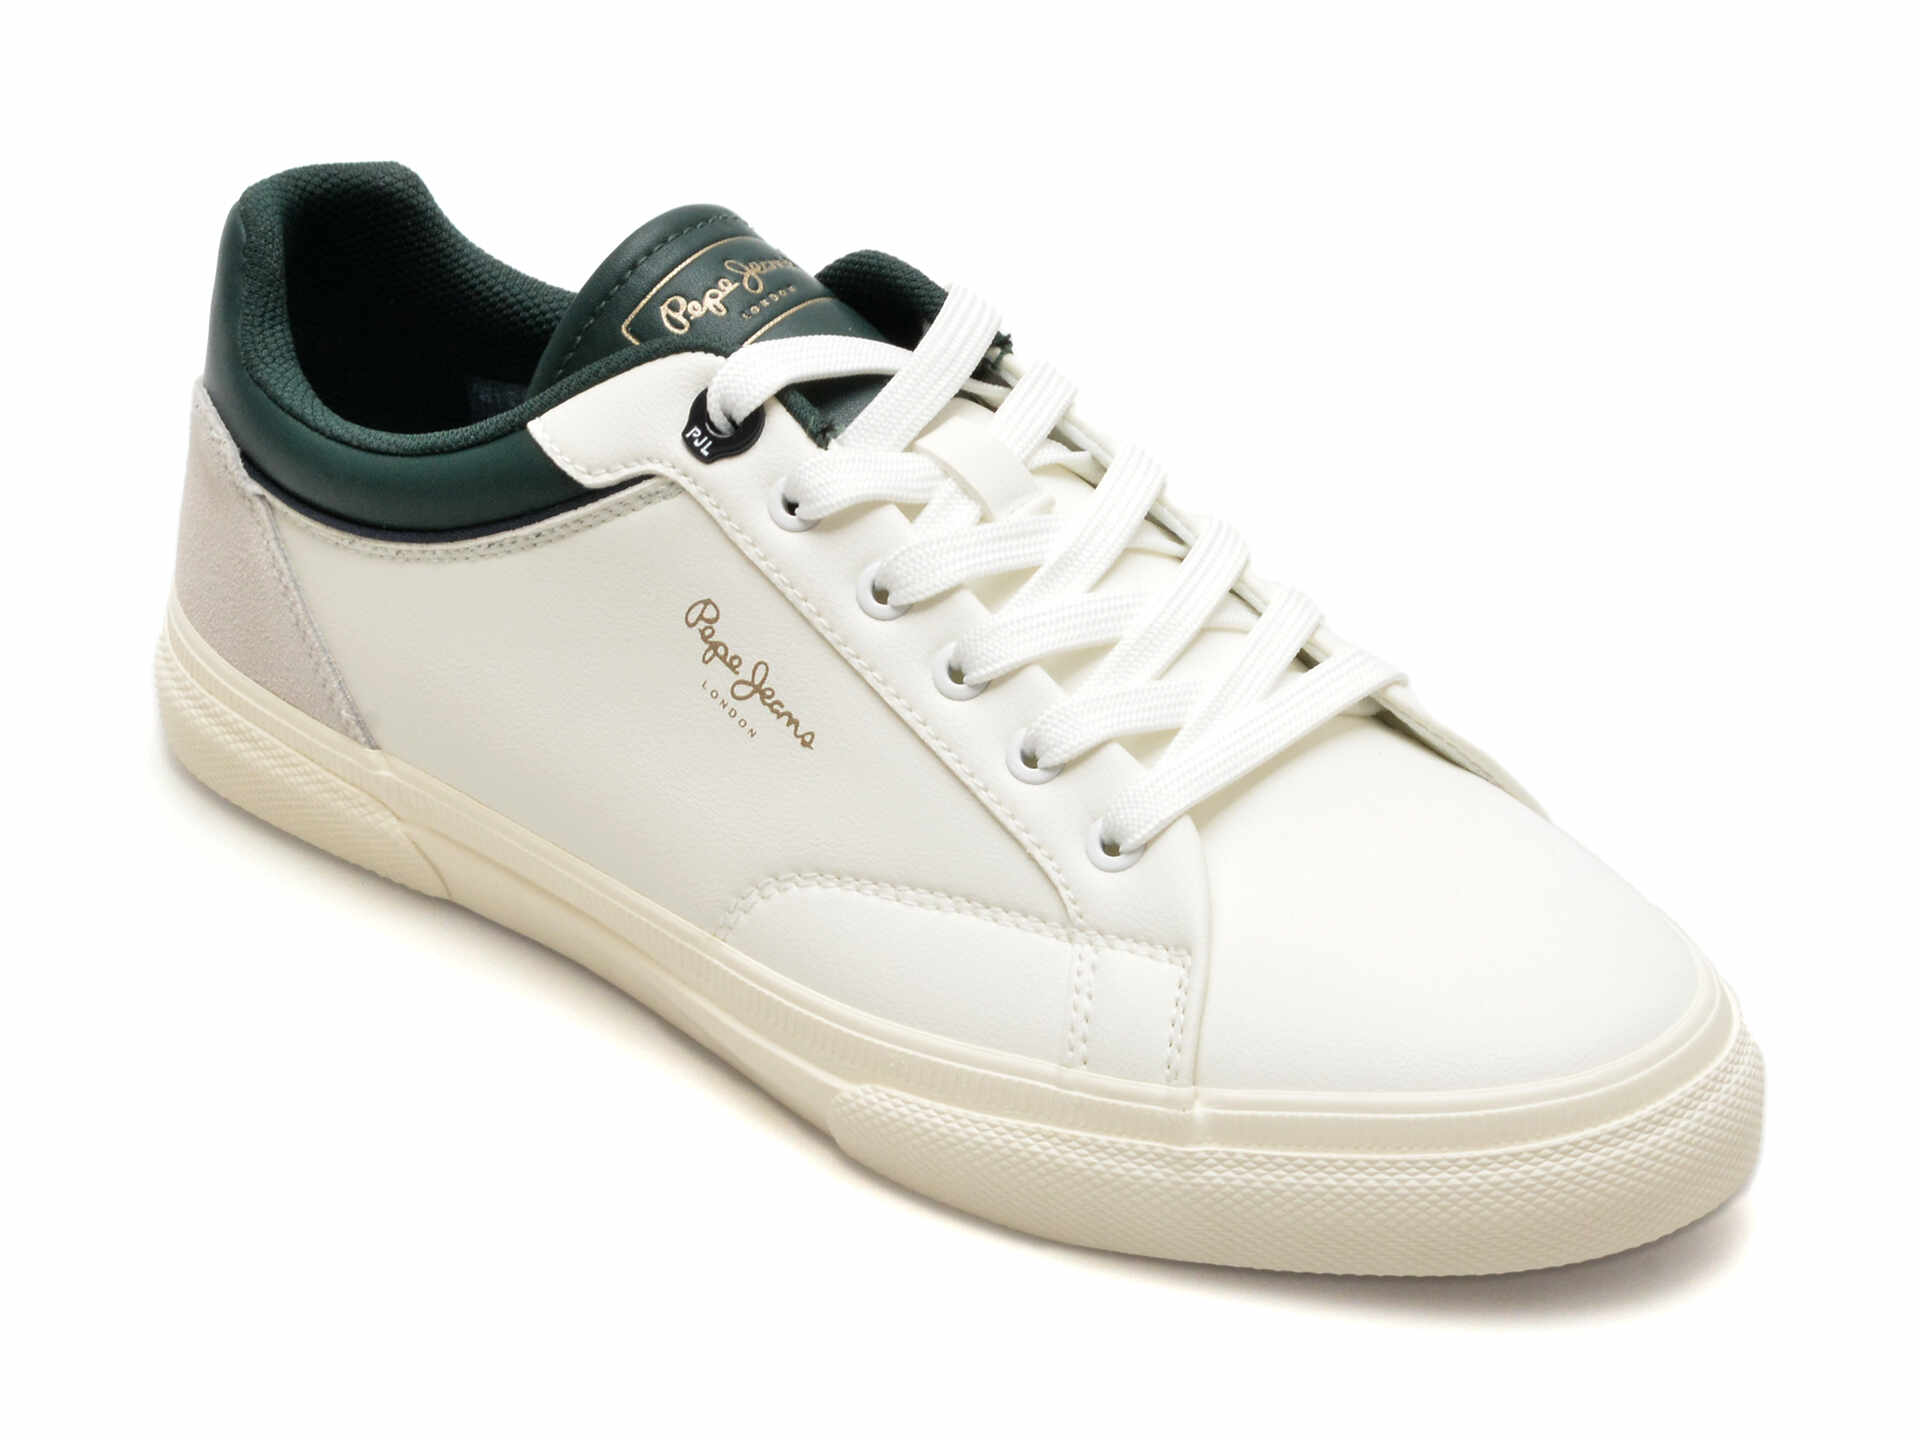 Pantofi PEPE JEANS albi, KENTON JOURNEY, din piele ecologica